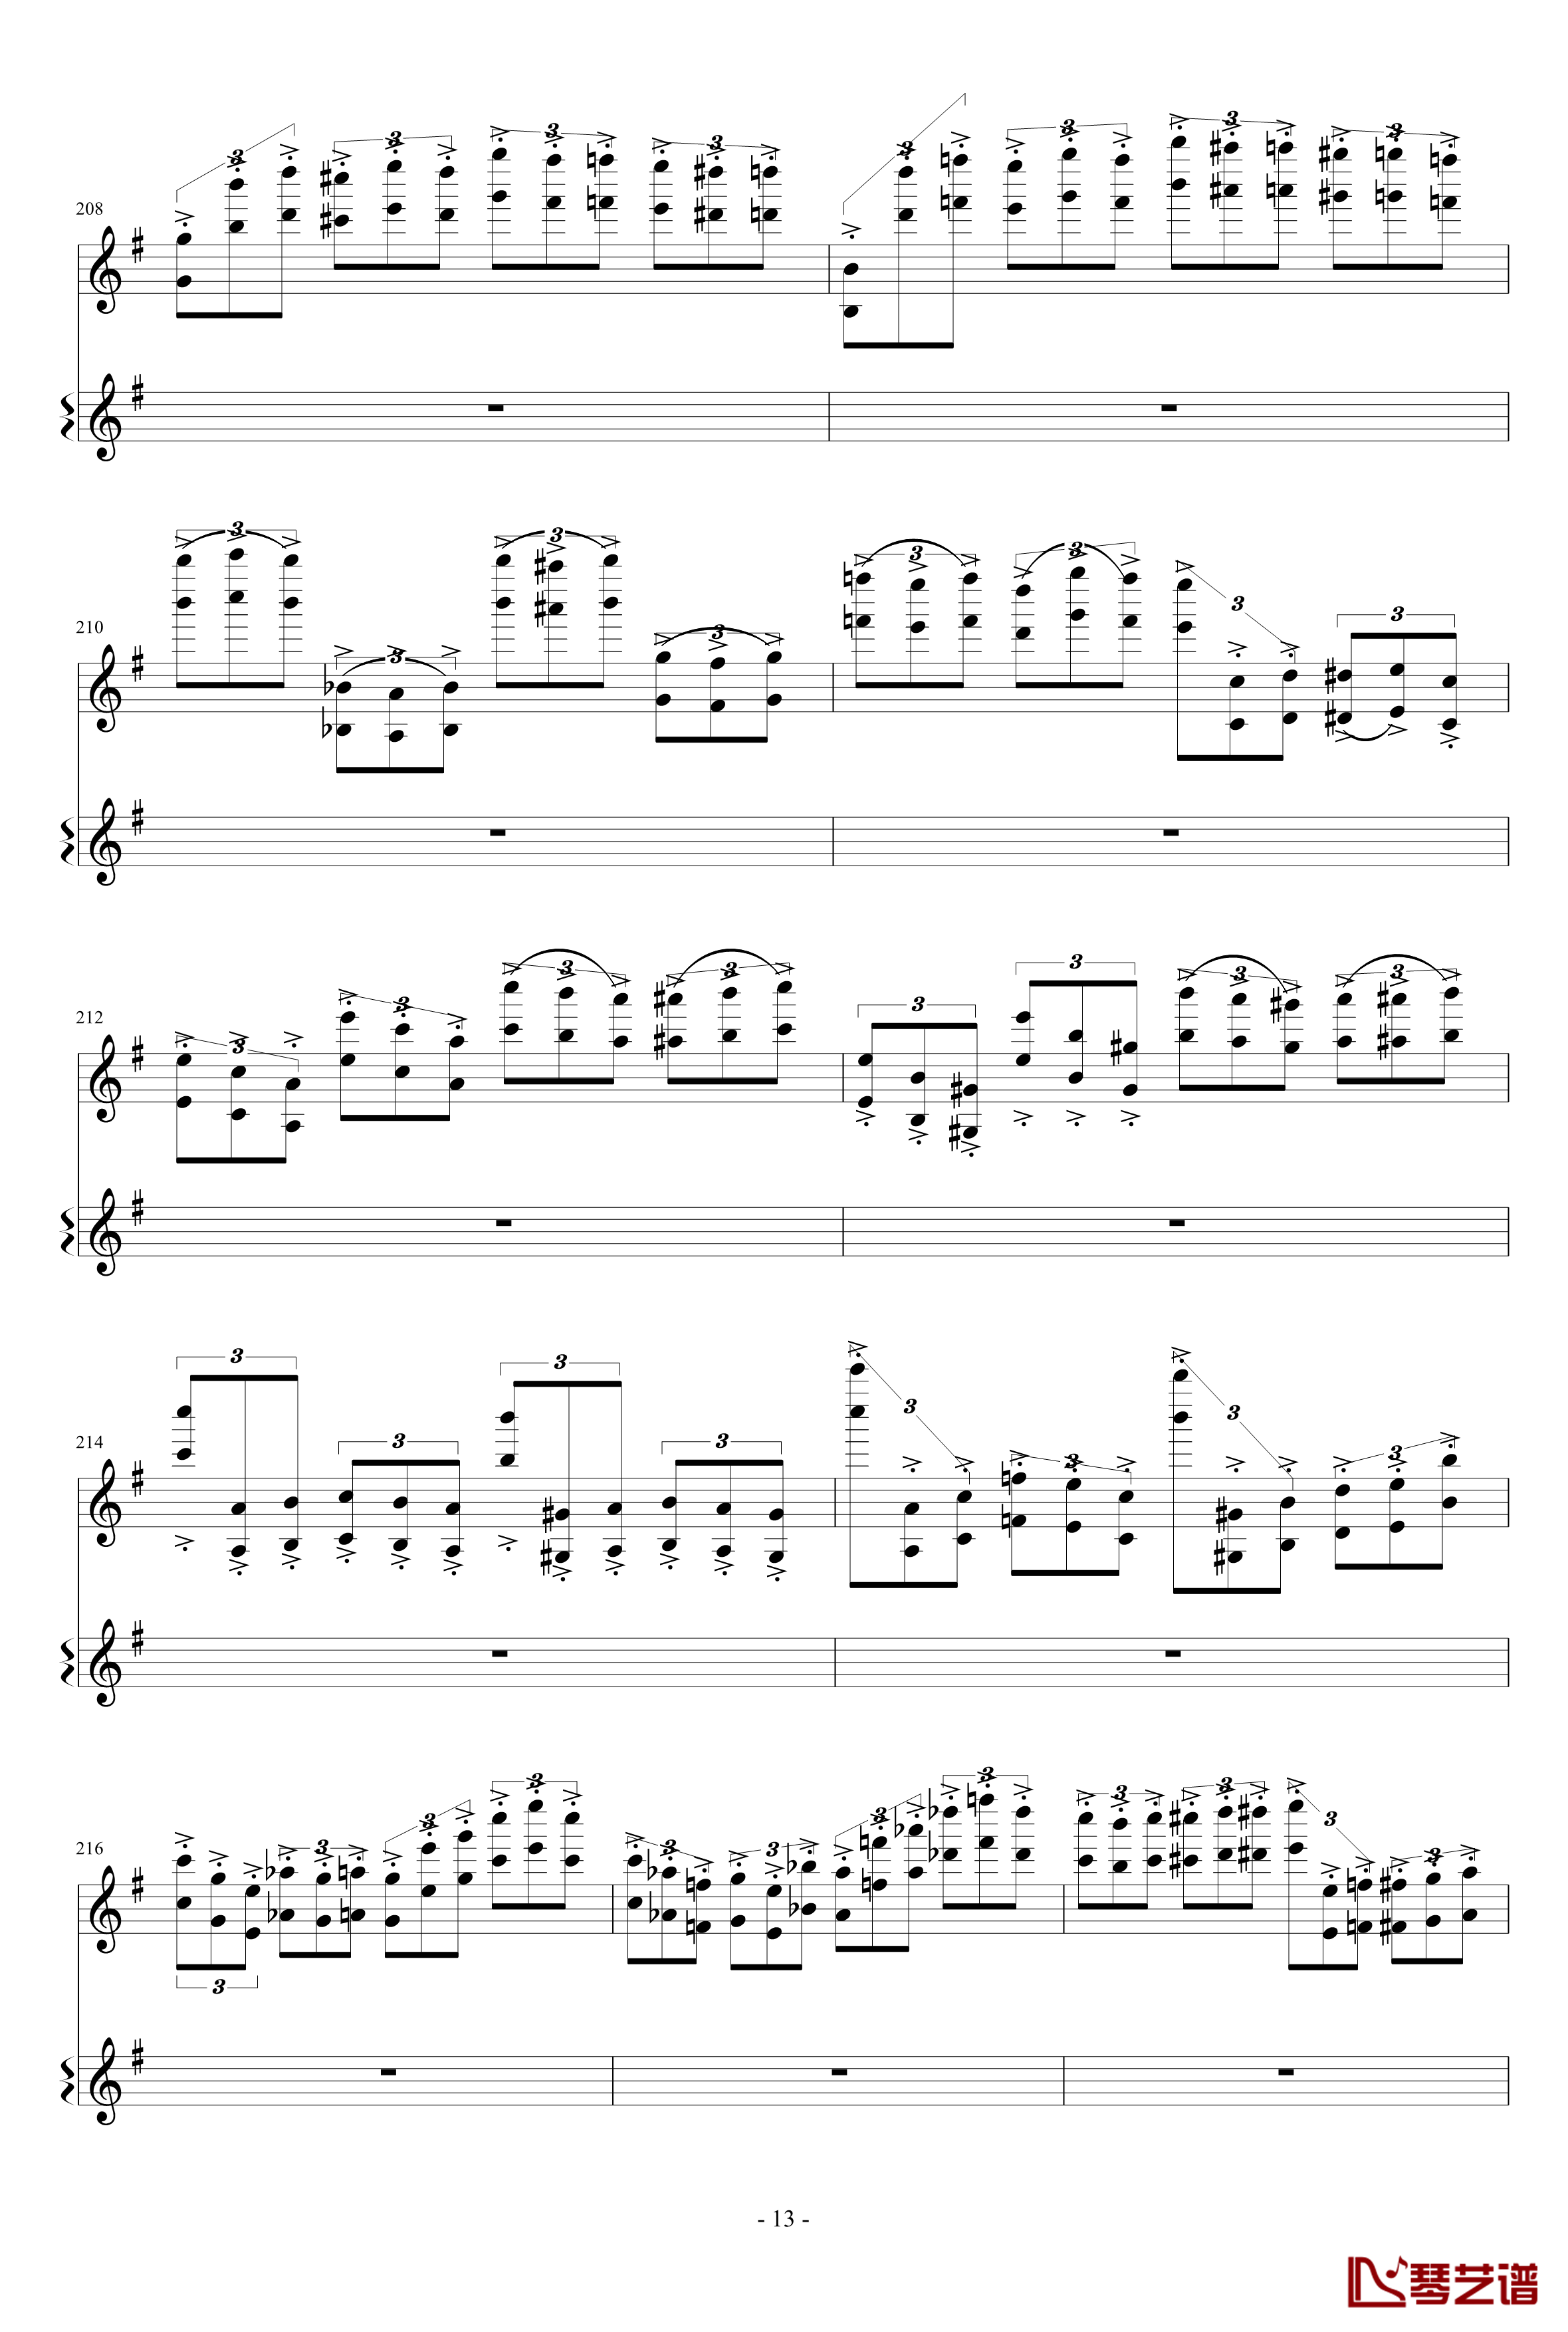 意大利国歌变奏曲钢琴谱-只修改了一个音-DXF13